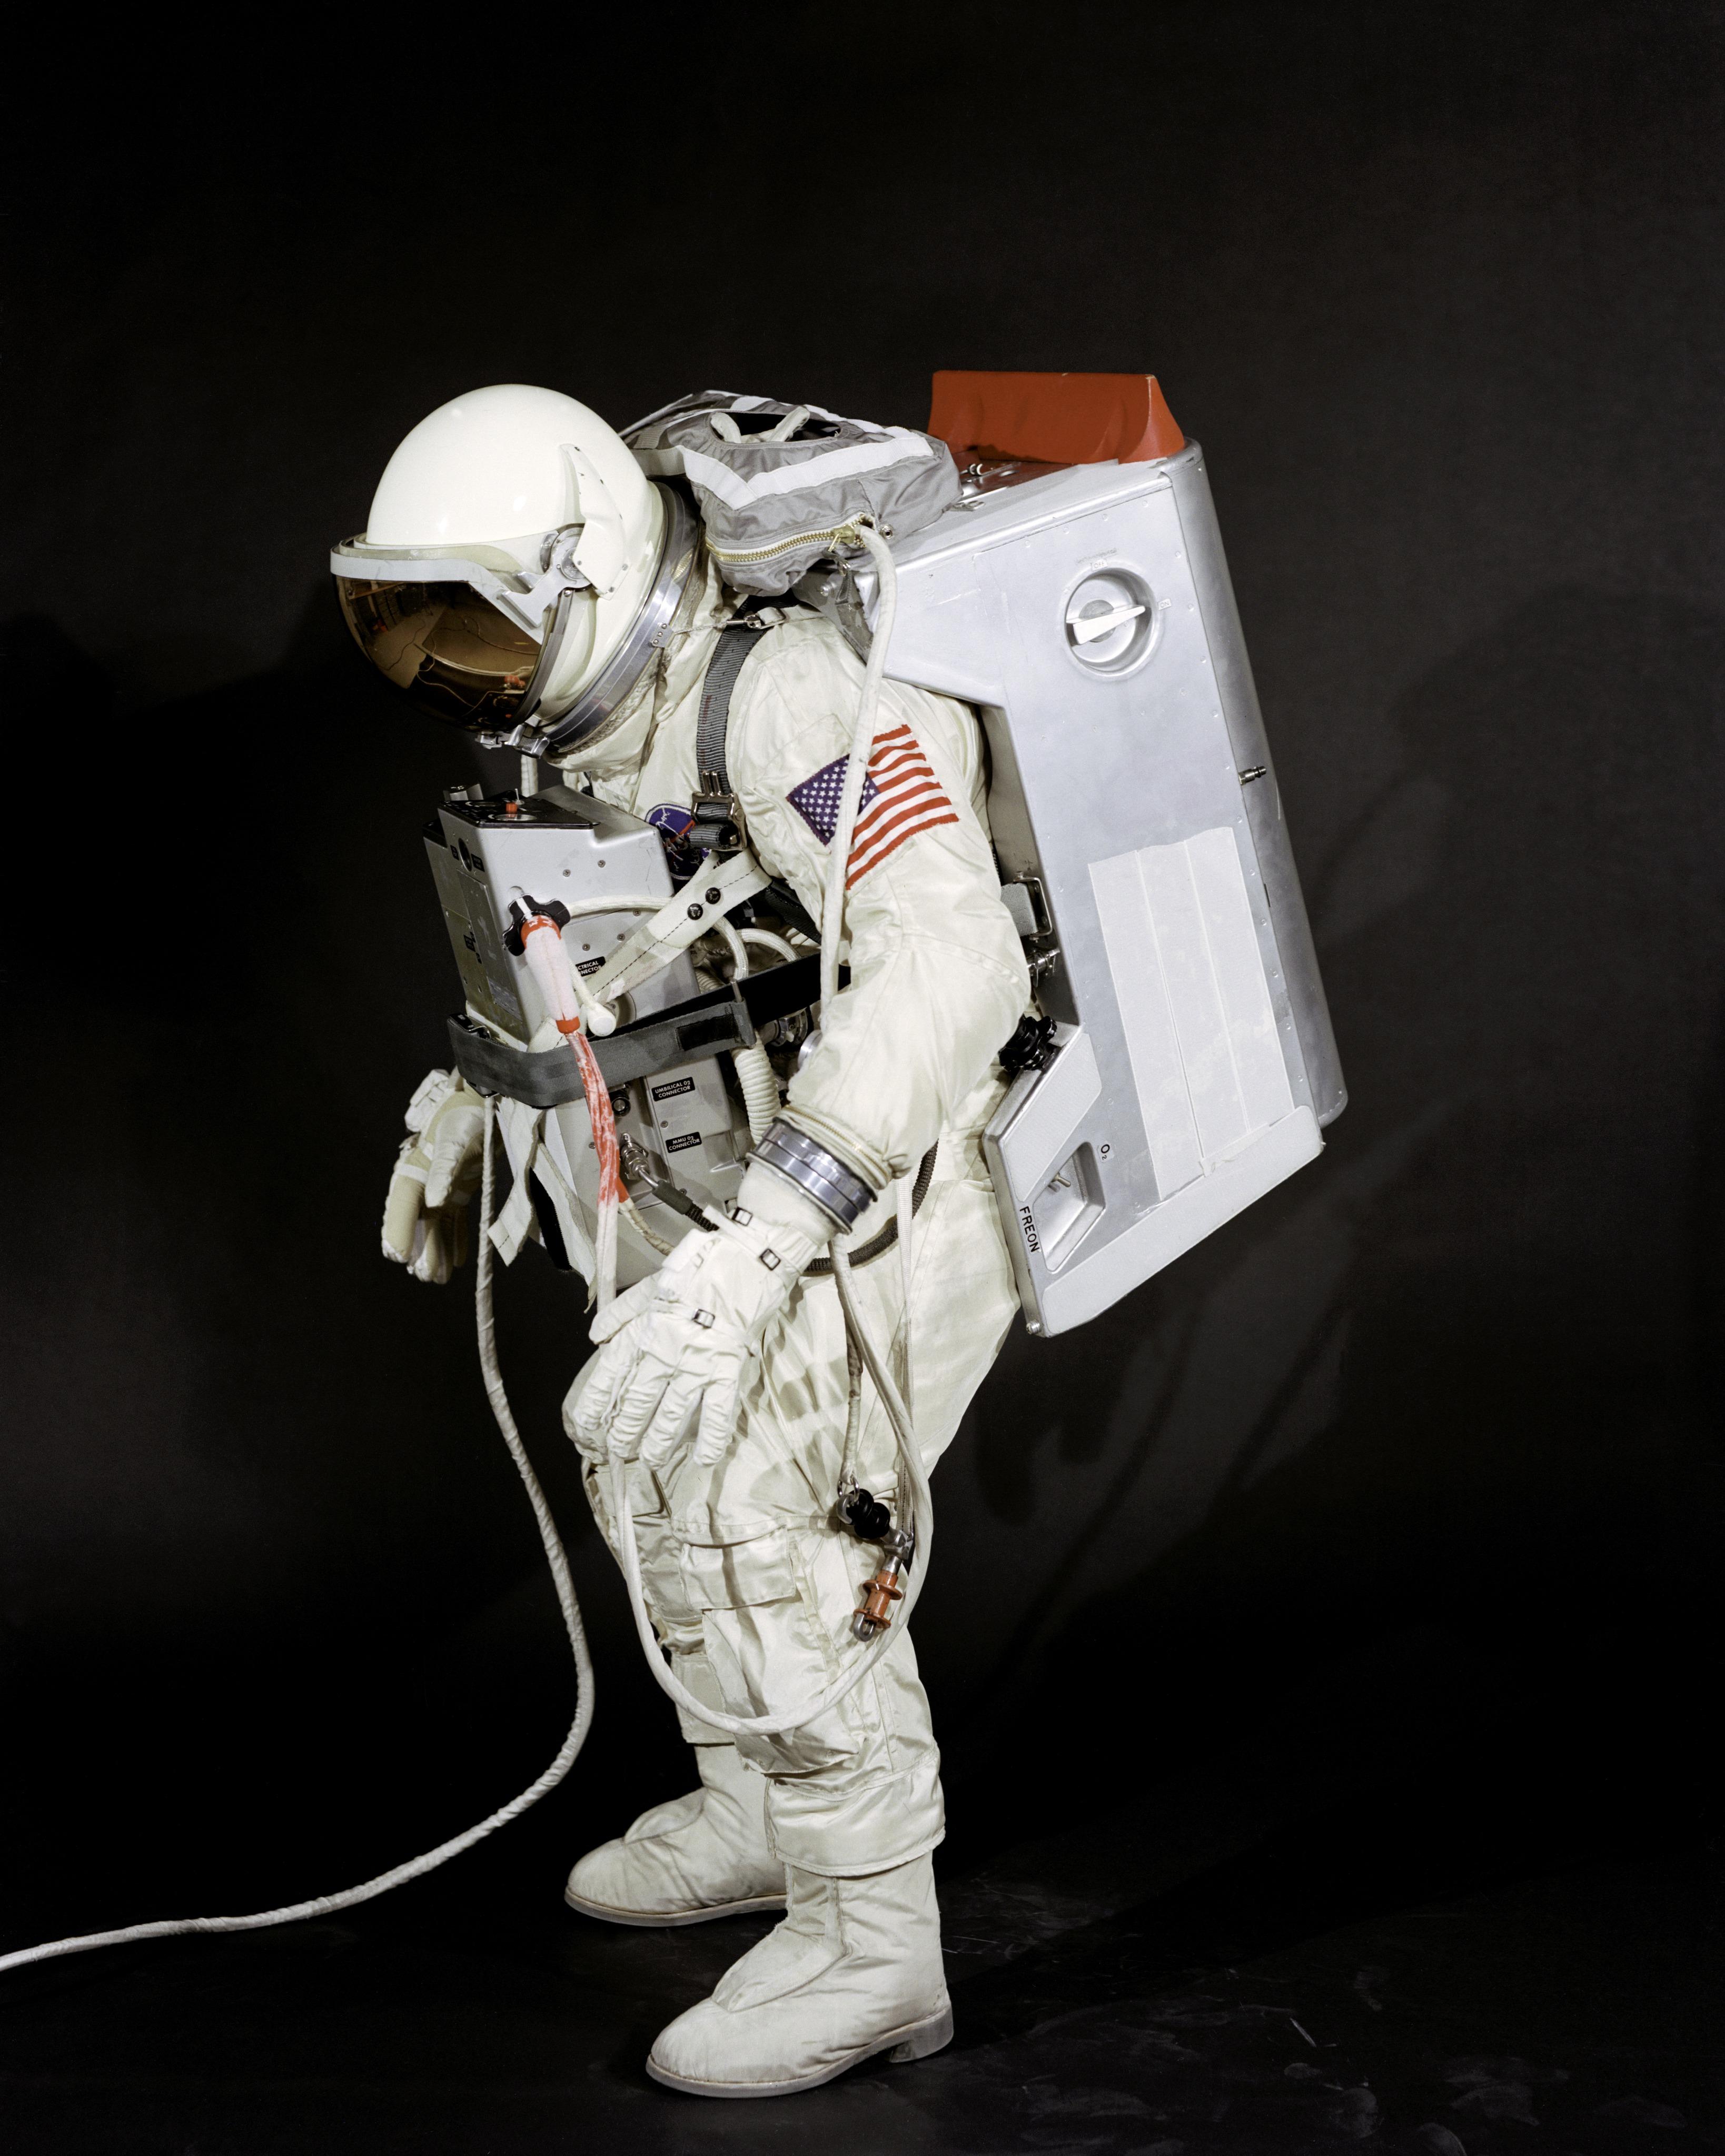 Poate supravieţui un om în spaţiul cosmic fără costum de astronaut?